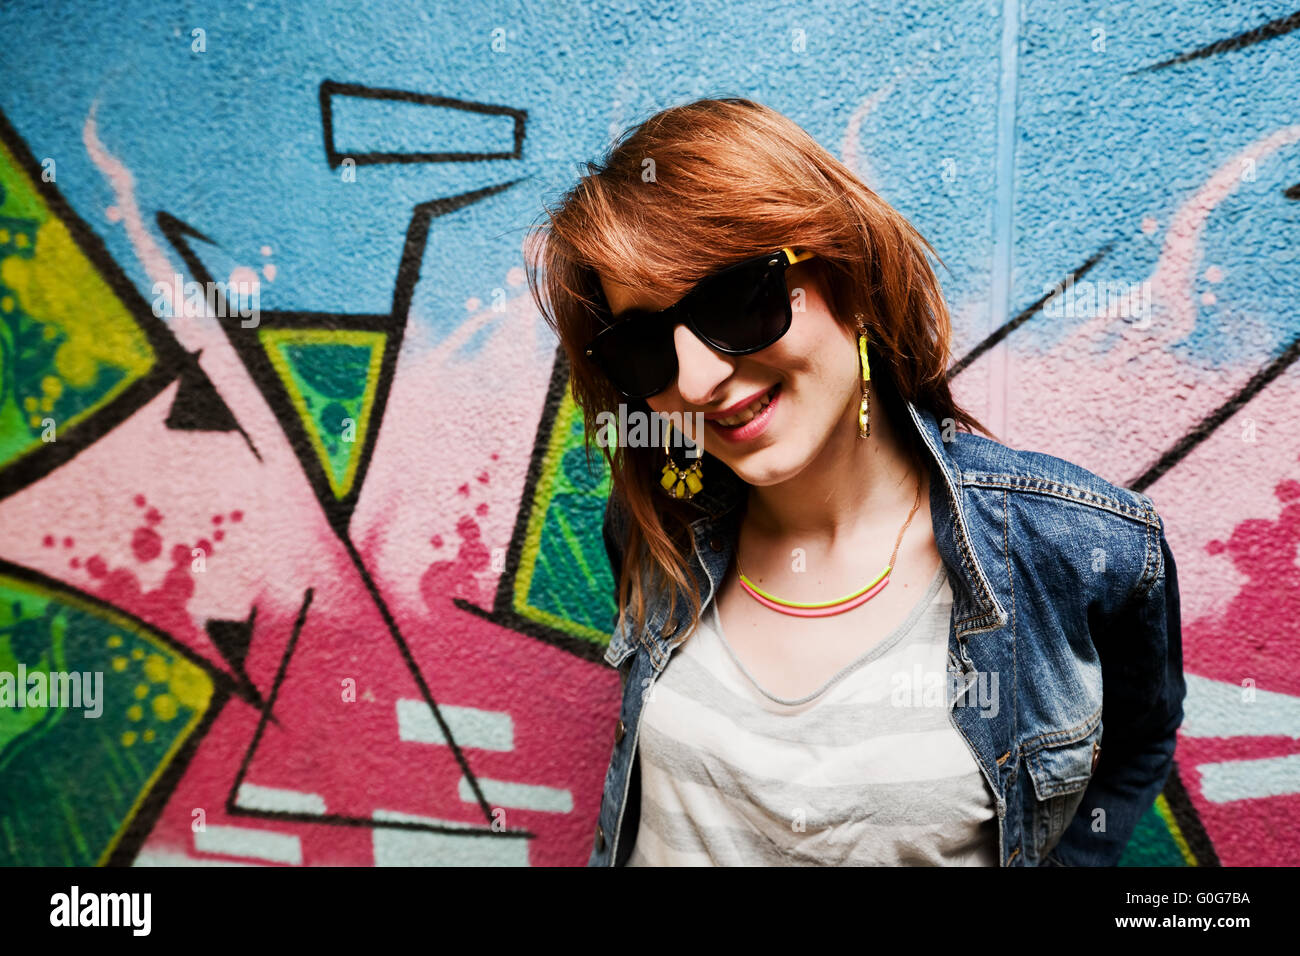 Stilvolles Mode Mädchen in Jeans Jacke Porträt an bunten Graffiti-Wand. Mode Stockfoto